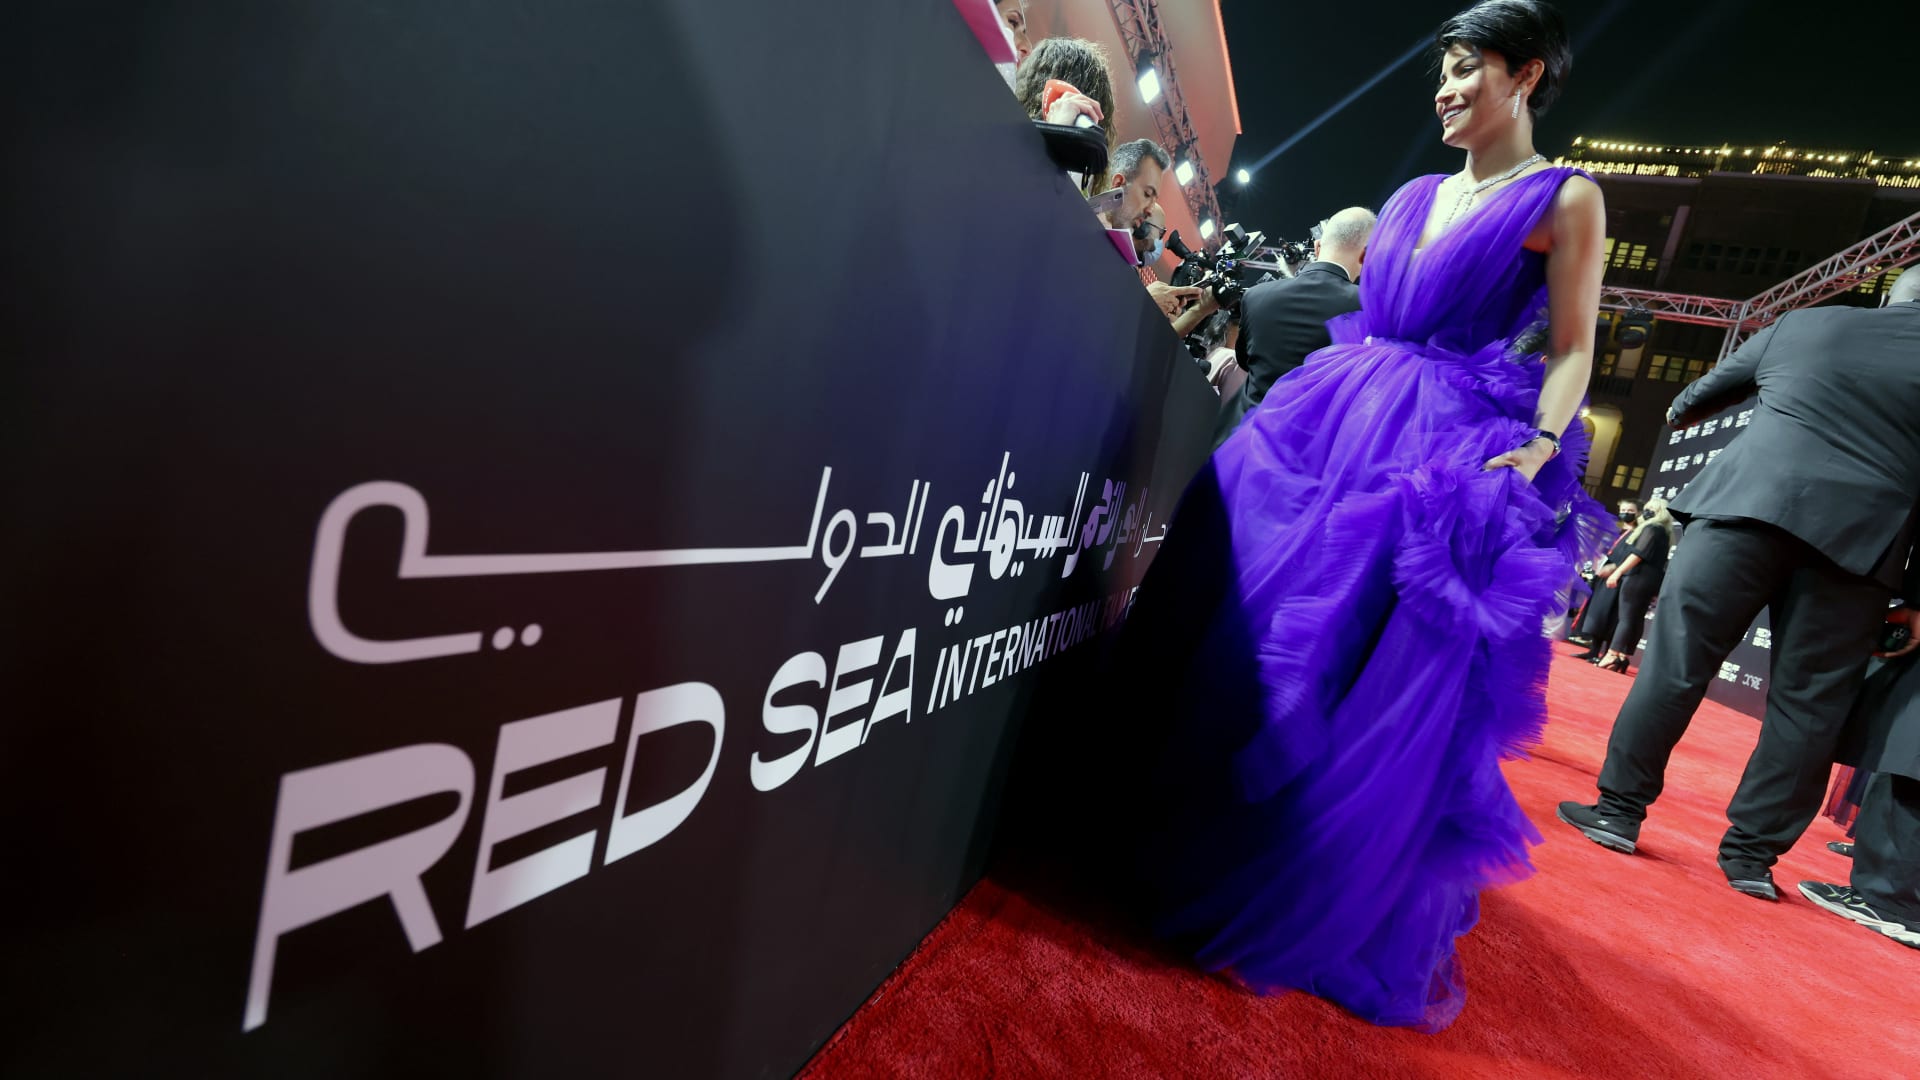 ميلا الزهراني تحضر العرض الأول لفيلم Cyrano خلال مهرجان البحر الأحمر السينمائي الدولي في 6 ديسمبر 2021 في جدة، السعودية